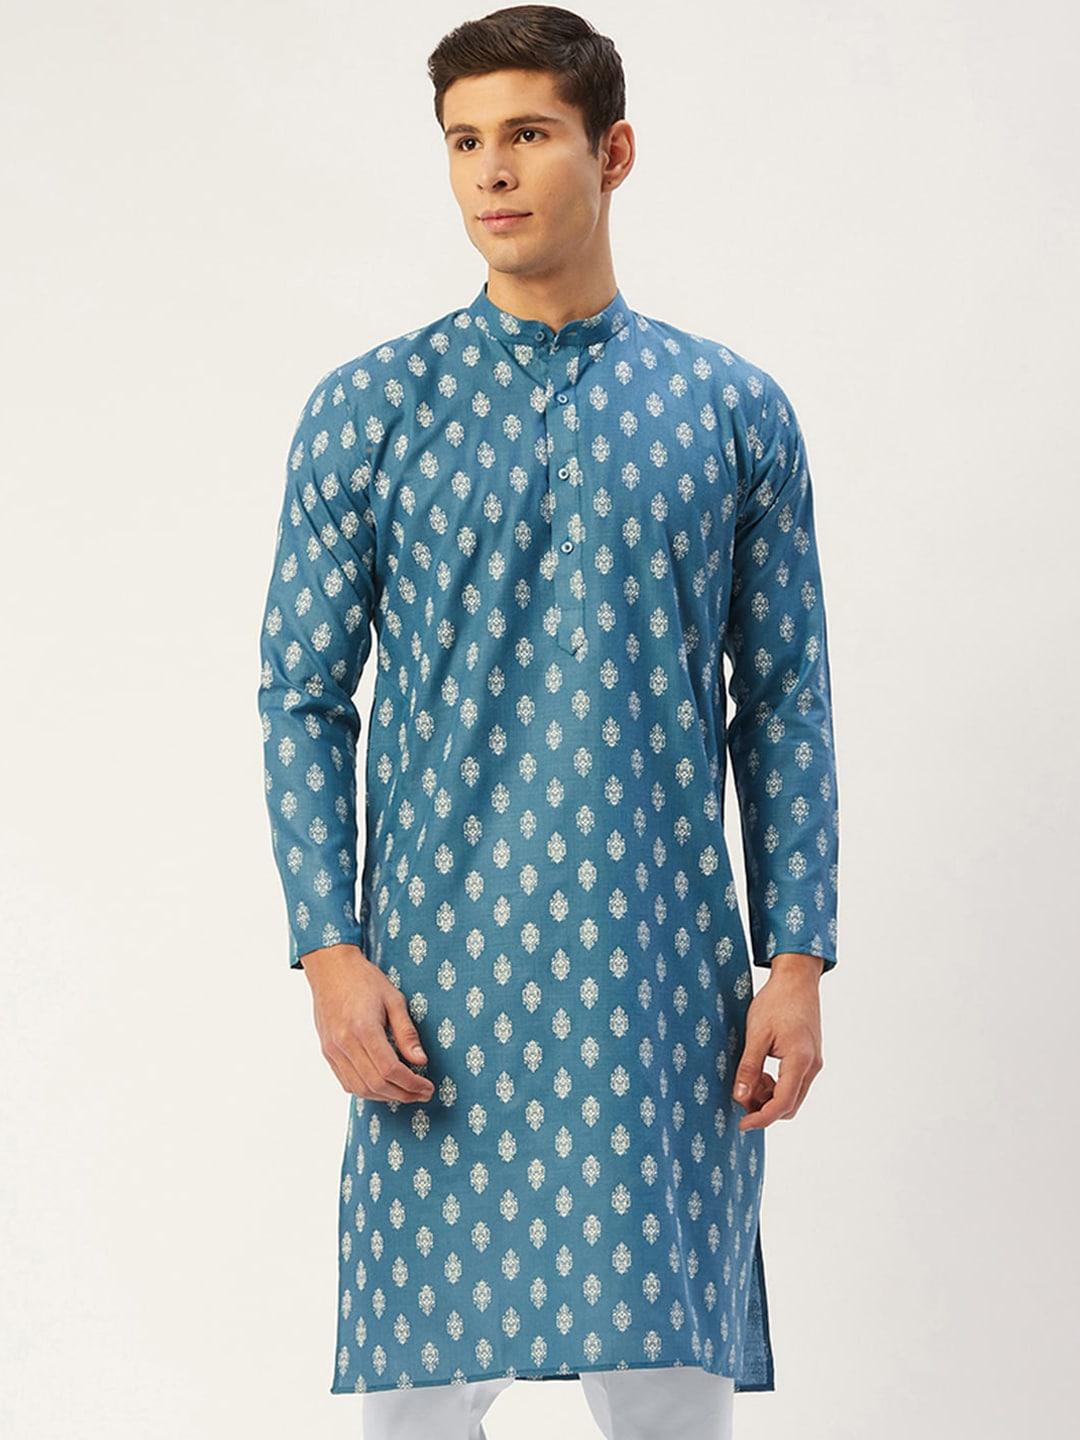 jompers-men-teal-blue-&-white-ethnic-motifs-kurta